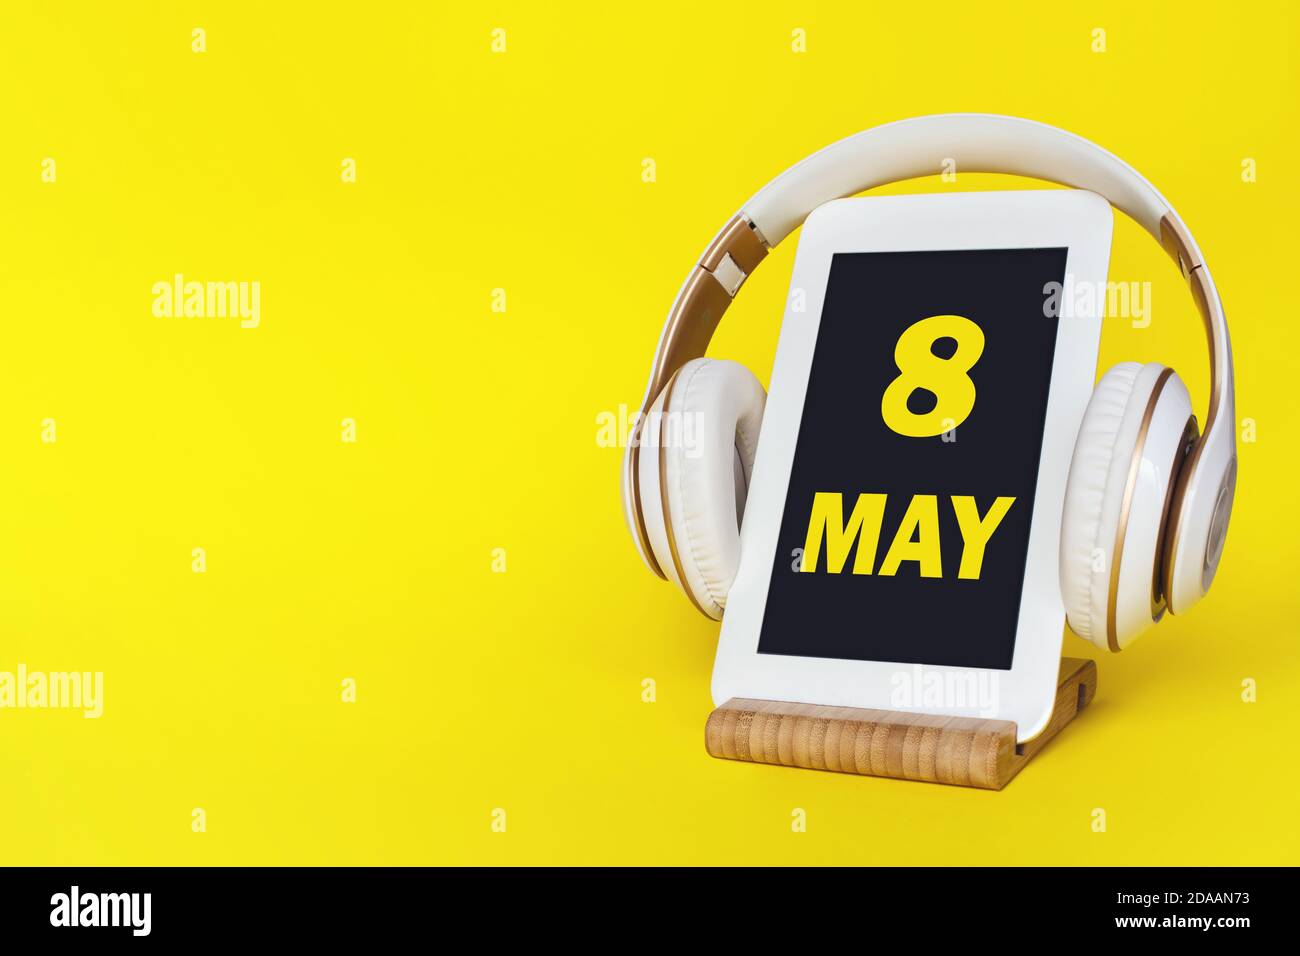 8 de mayo. Día 8 del mes, fecha del calendario. Auriculares elegantes y tableta moderna sobre fondo amarillo. Espacio para texto. Concepto de educación, tecnología, vida Foto de stock